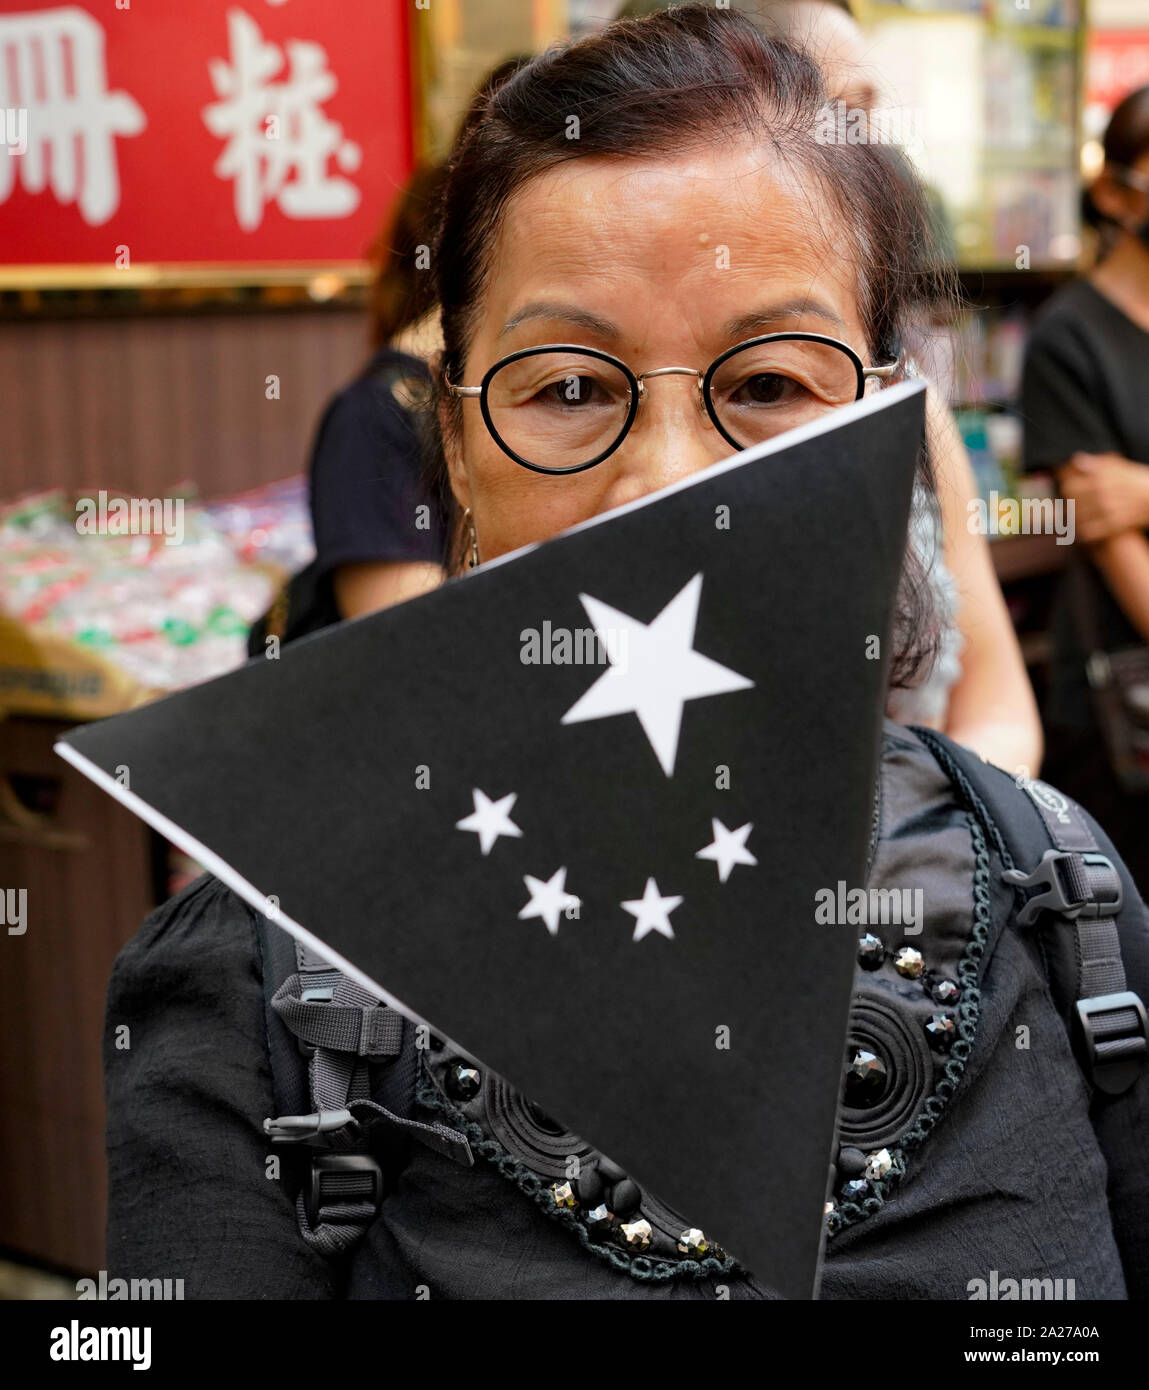 Hong Kong. 1 octobre 2019. Au début de mars, les manifestants pro-démocratie avec inscription noire avec drapeau dans Hong Kong Causeway Bay. Les manifestants ont été estimés à 100 000. Plus tard, la violence a éclaté dans l'après-midi quand les manifestants ont attaqué la police. Iain Masterton/Alamy Live News. Banque D'Images